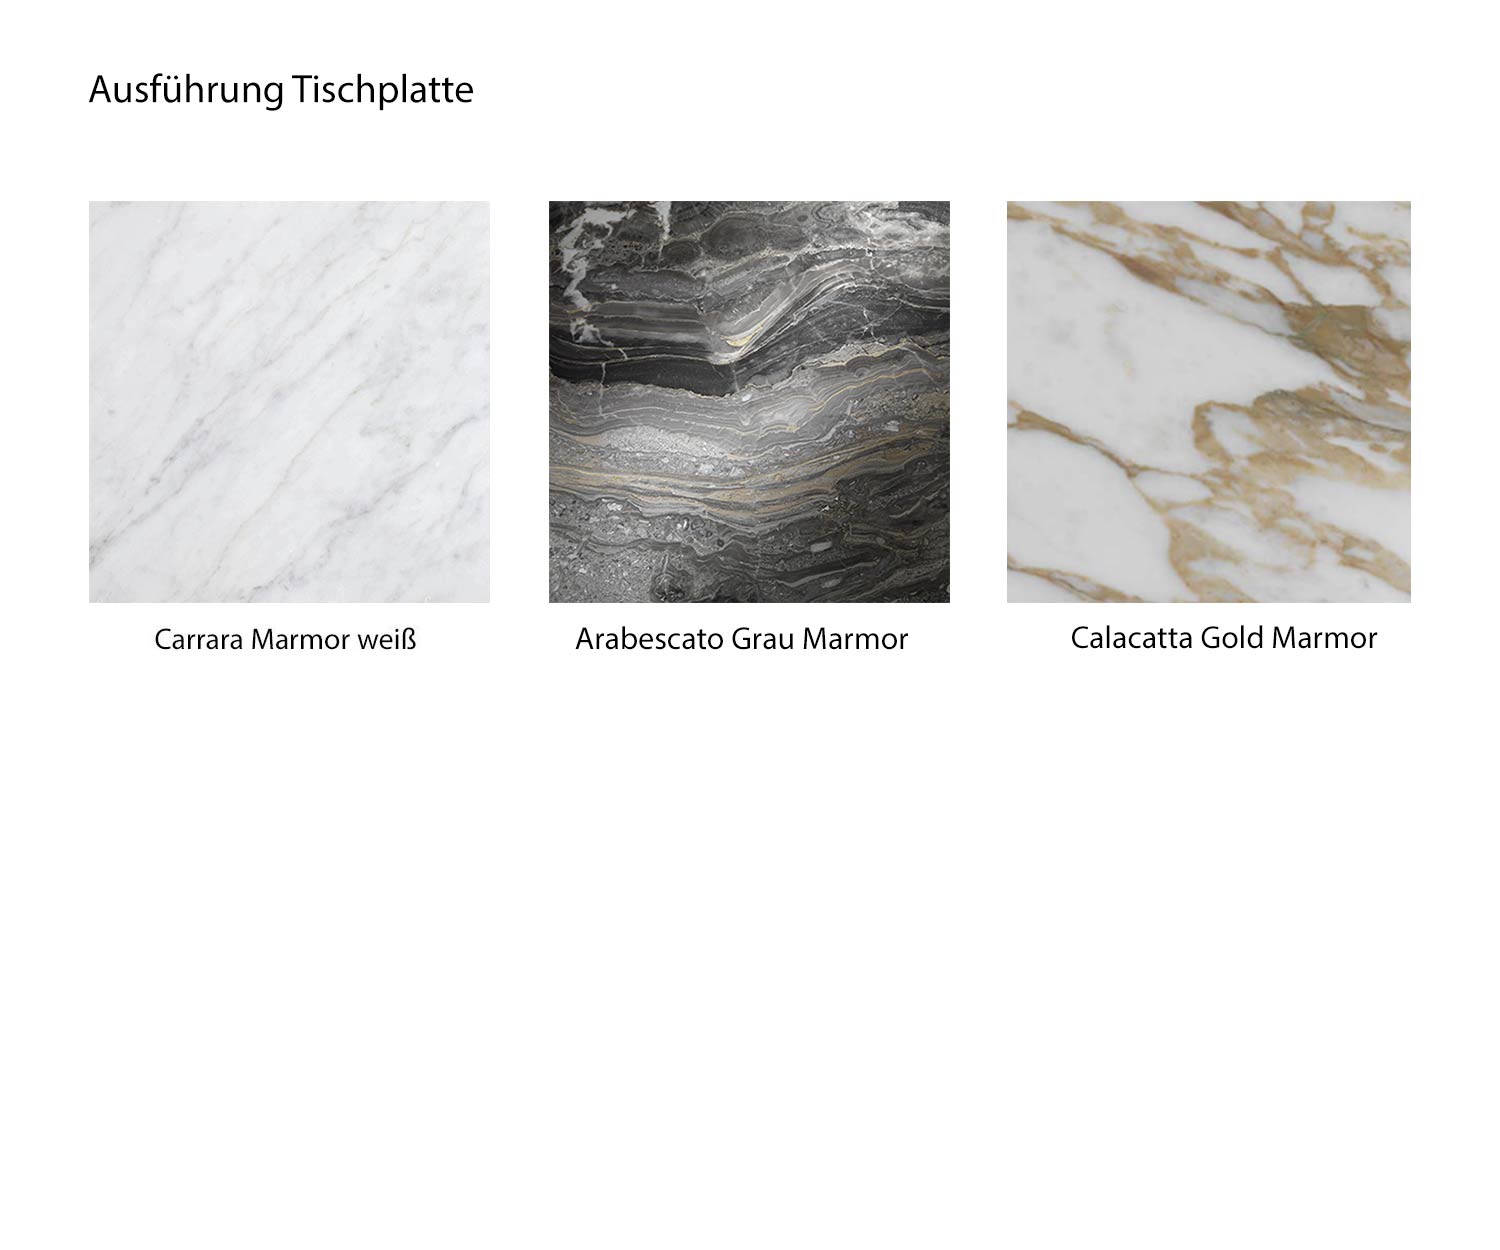 Farbübersicht Couch Tisch Wave Marmortypen Carrara Calacatta Arabescato